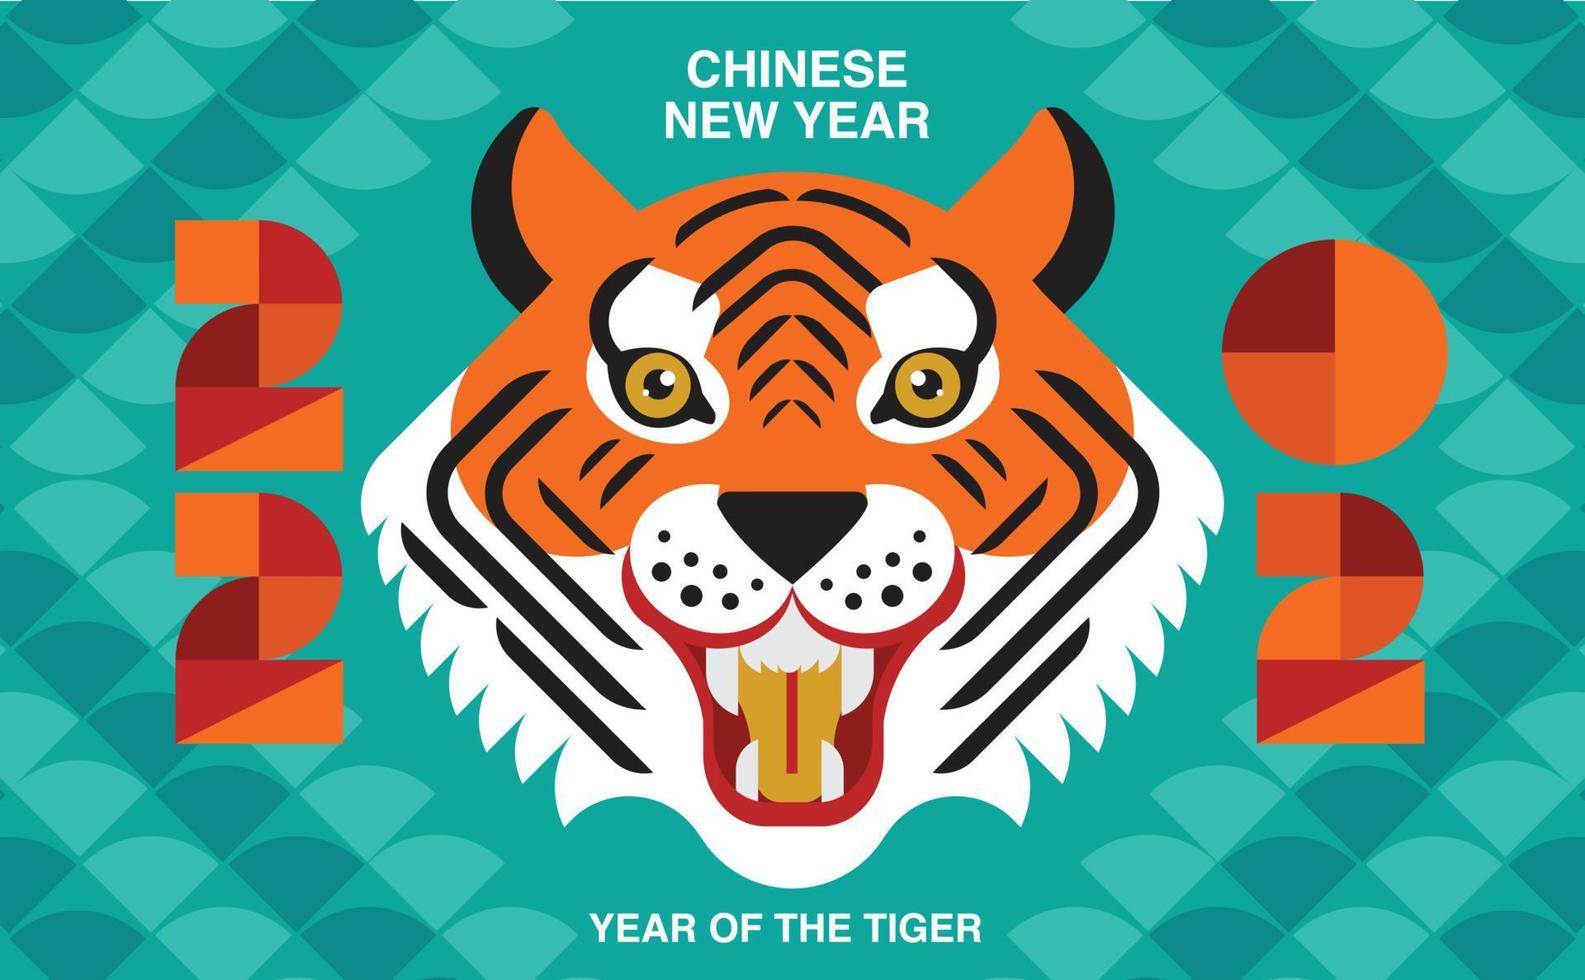 Frohes neues Jahr, chinesisches neues Jahr, 2022, Jahr des Tigers, Zeichentrickfigur, königlicher Tiger, flaches Design der Reflexion vektor